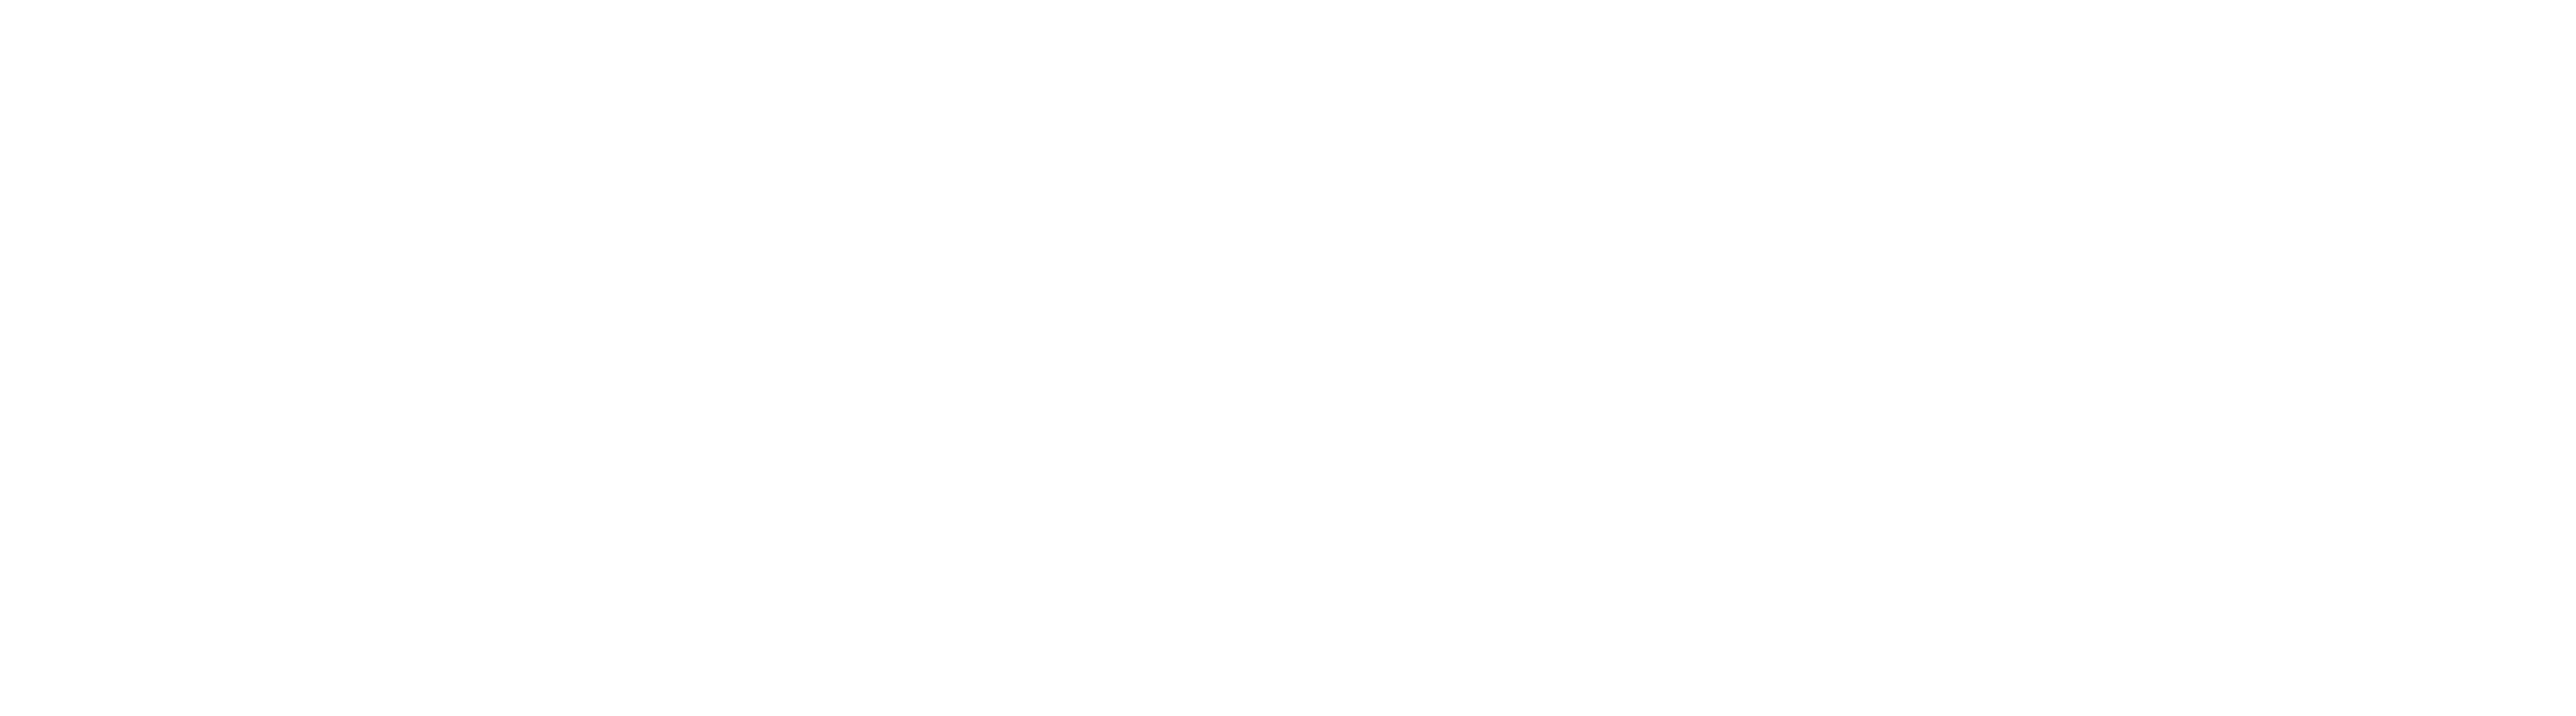 Holloway CPAs & Advisors